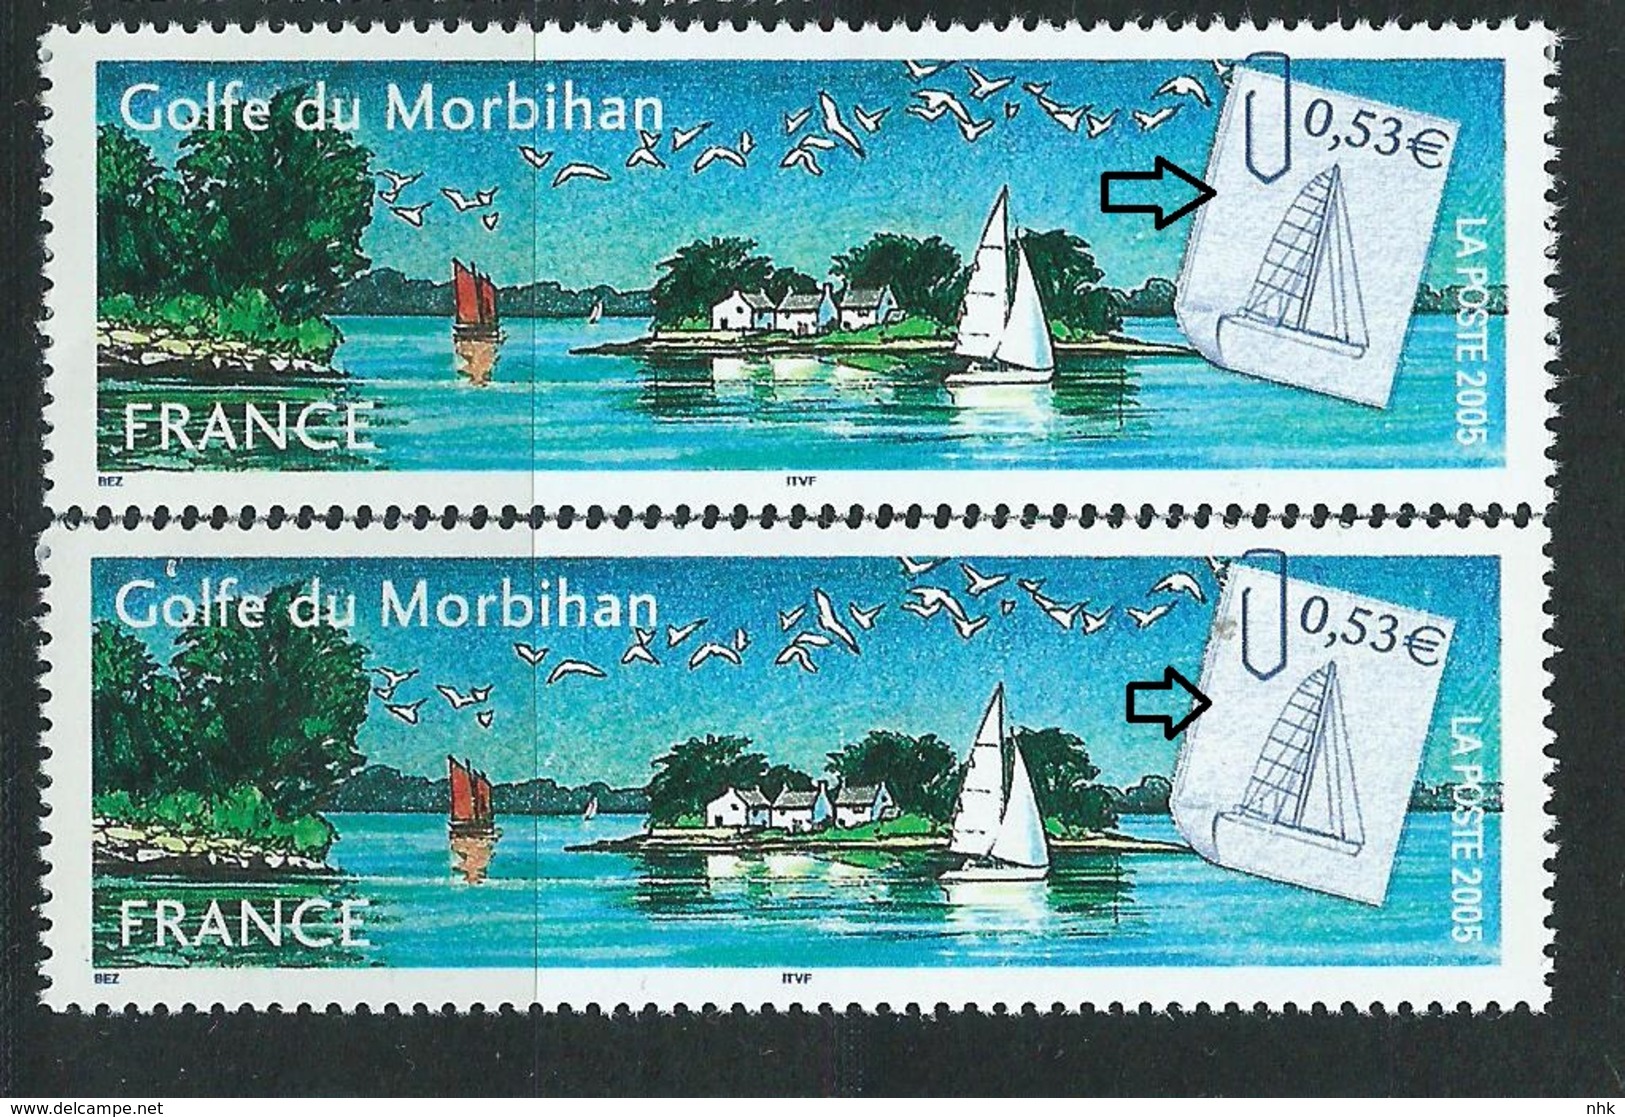 [28] Variété :  N° 3783 Golfe Du Morbihan Vignette Blanche Au Lieu De Grise + Normal ** - Neufs